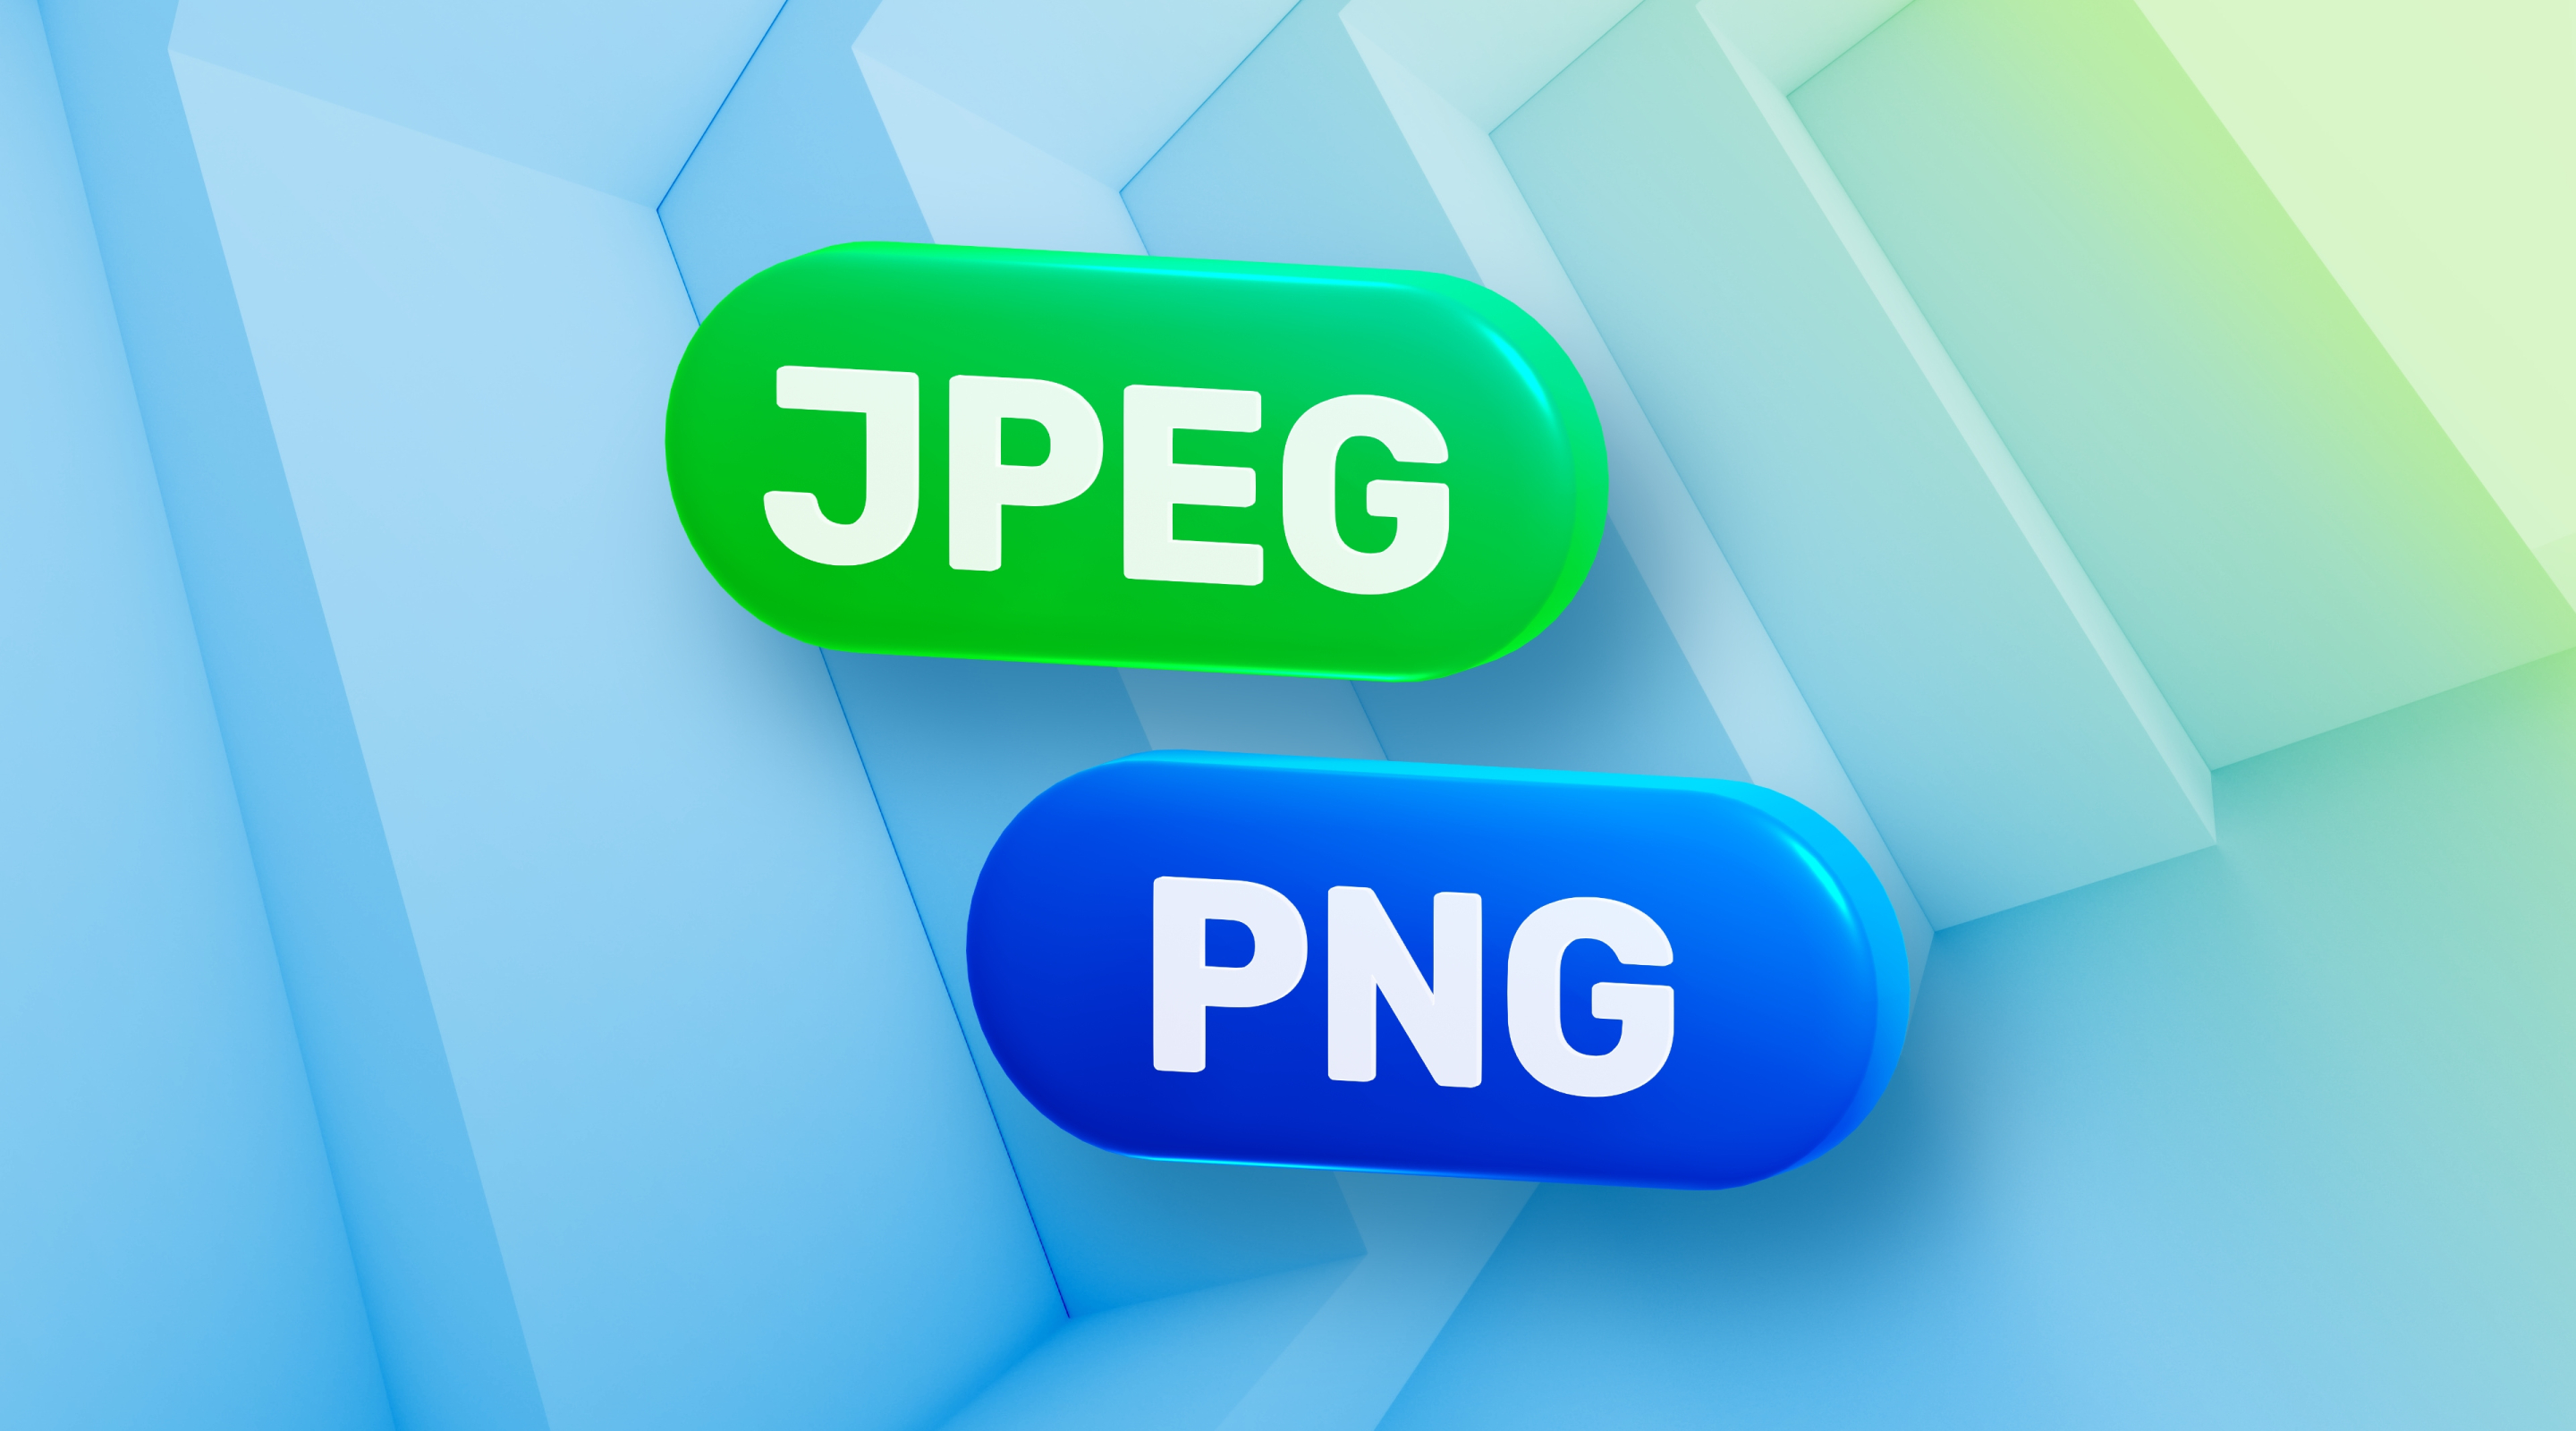 JPEG або PNG — який формат має кращу якість?